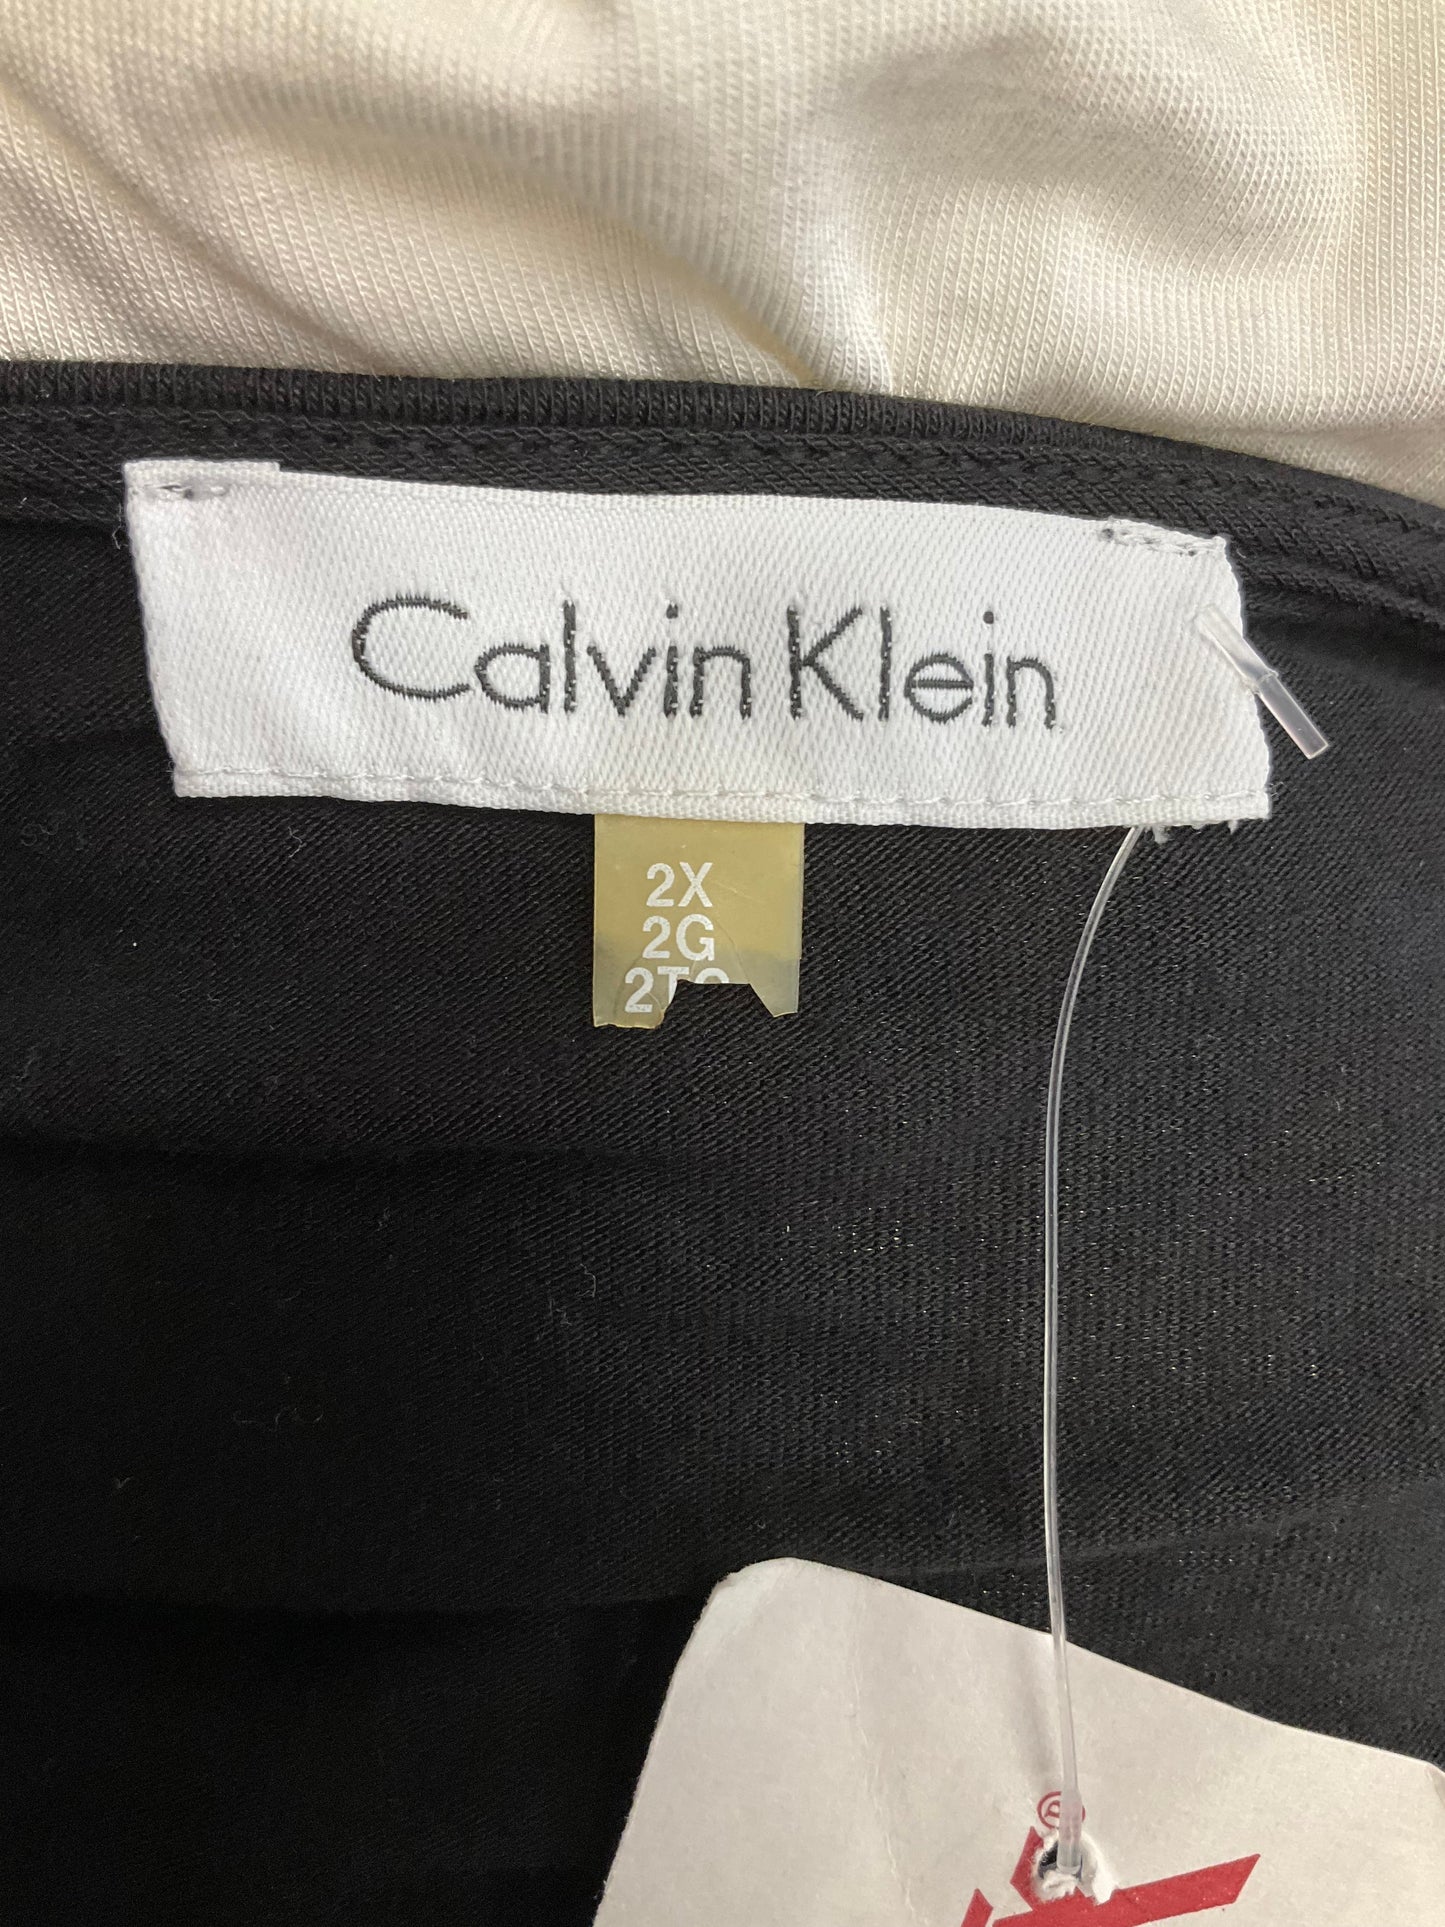 Black & White Top 3/4 Sleeve Calvin Klein, Size 2x